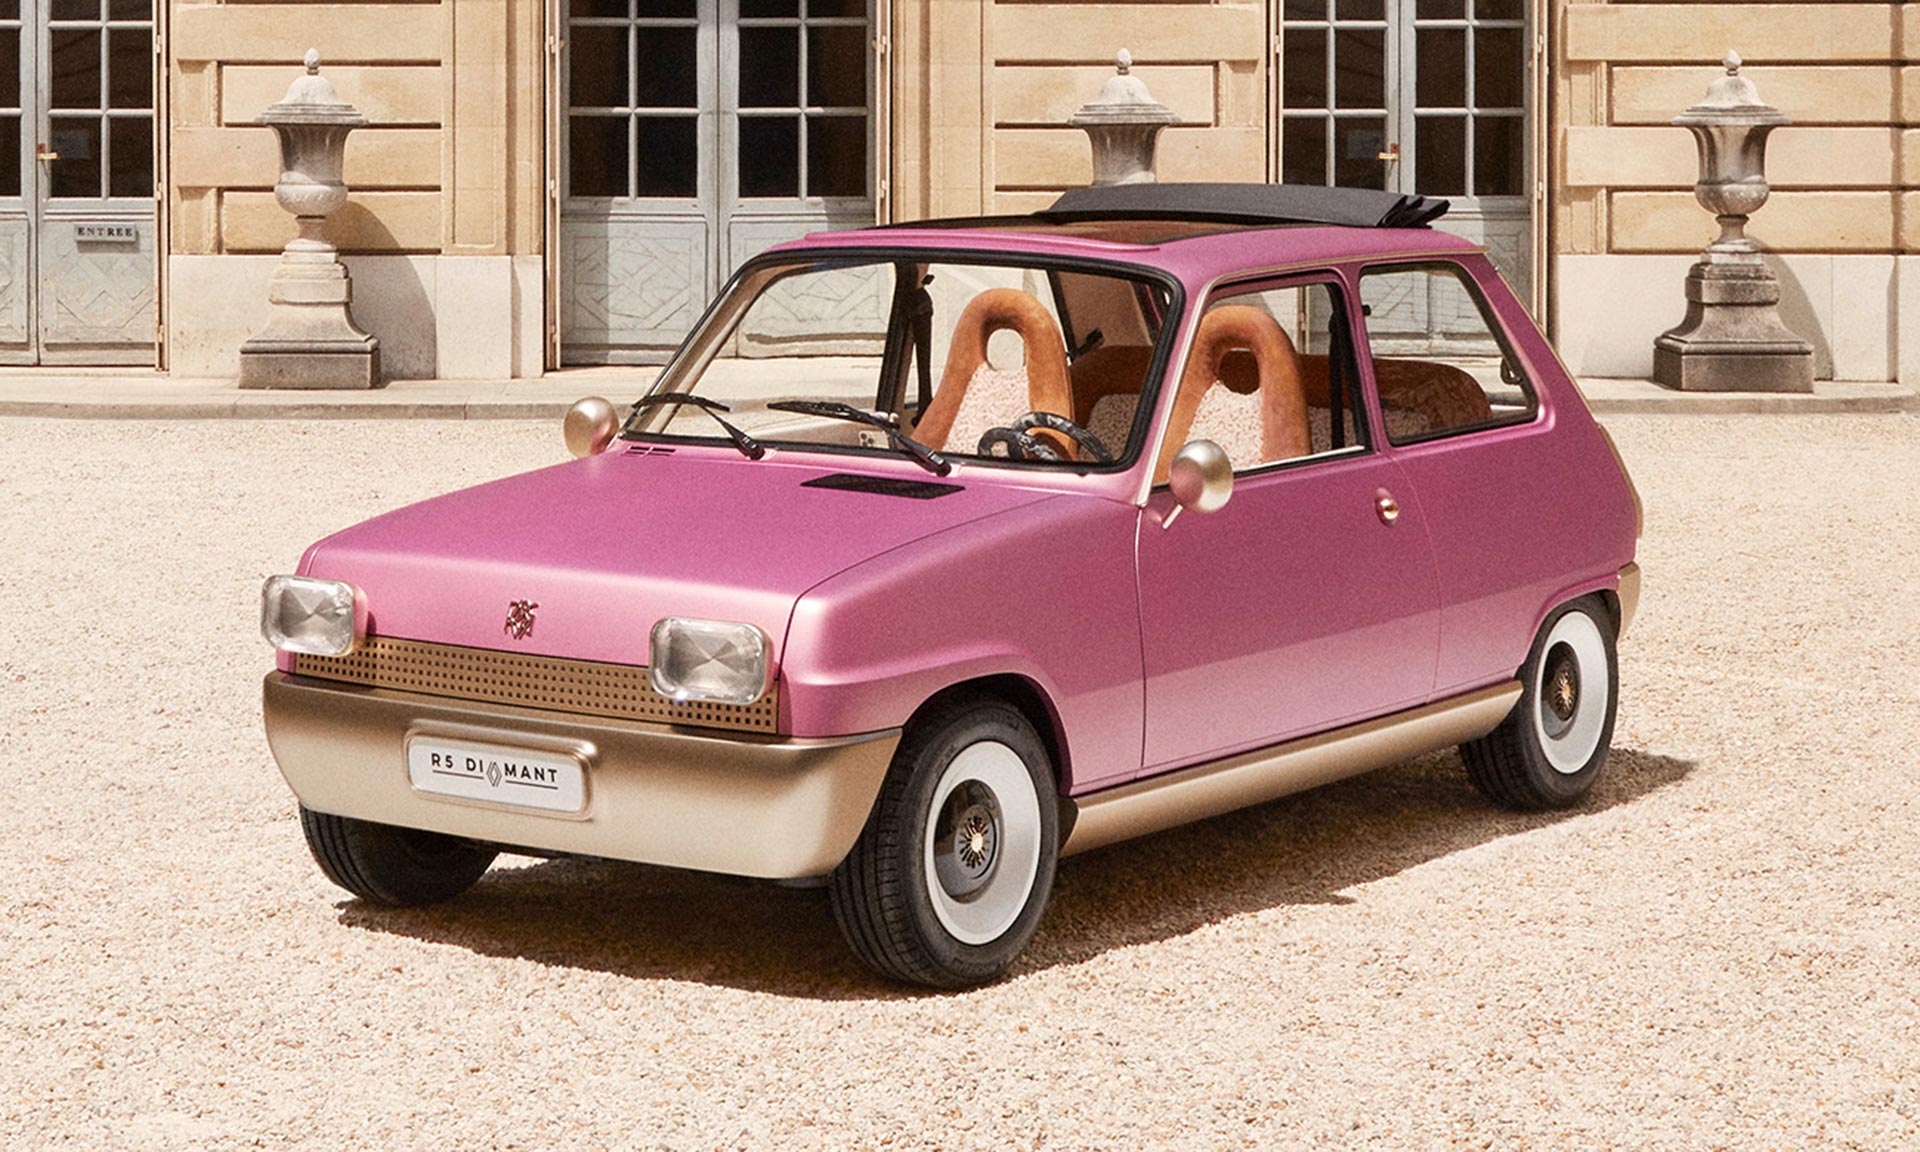 Francie oslavuje 50 let ikonického vozítka speciální kreací Renault 5 Diamant